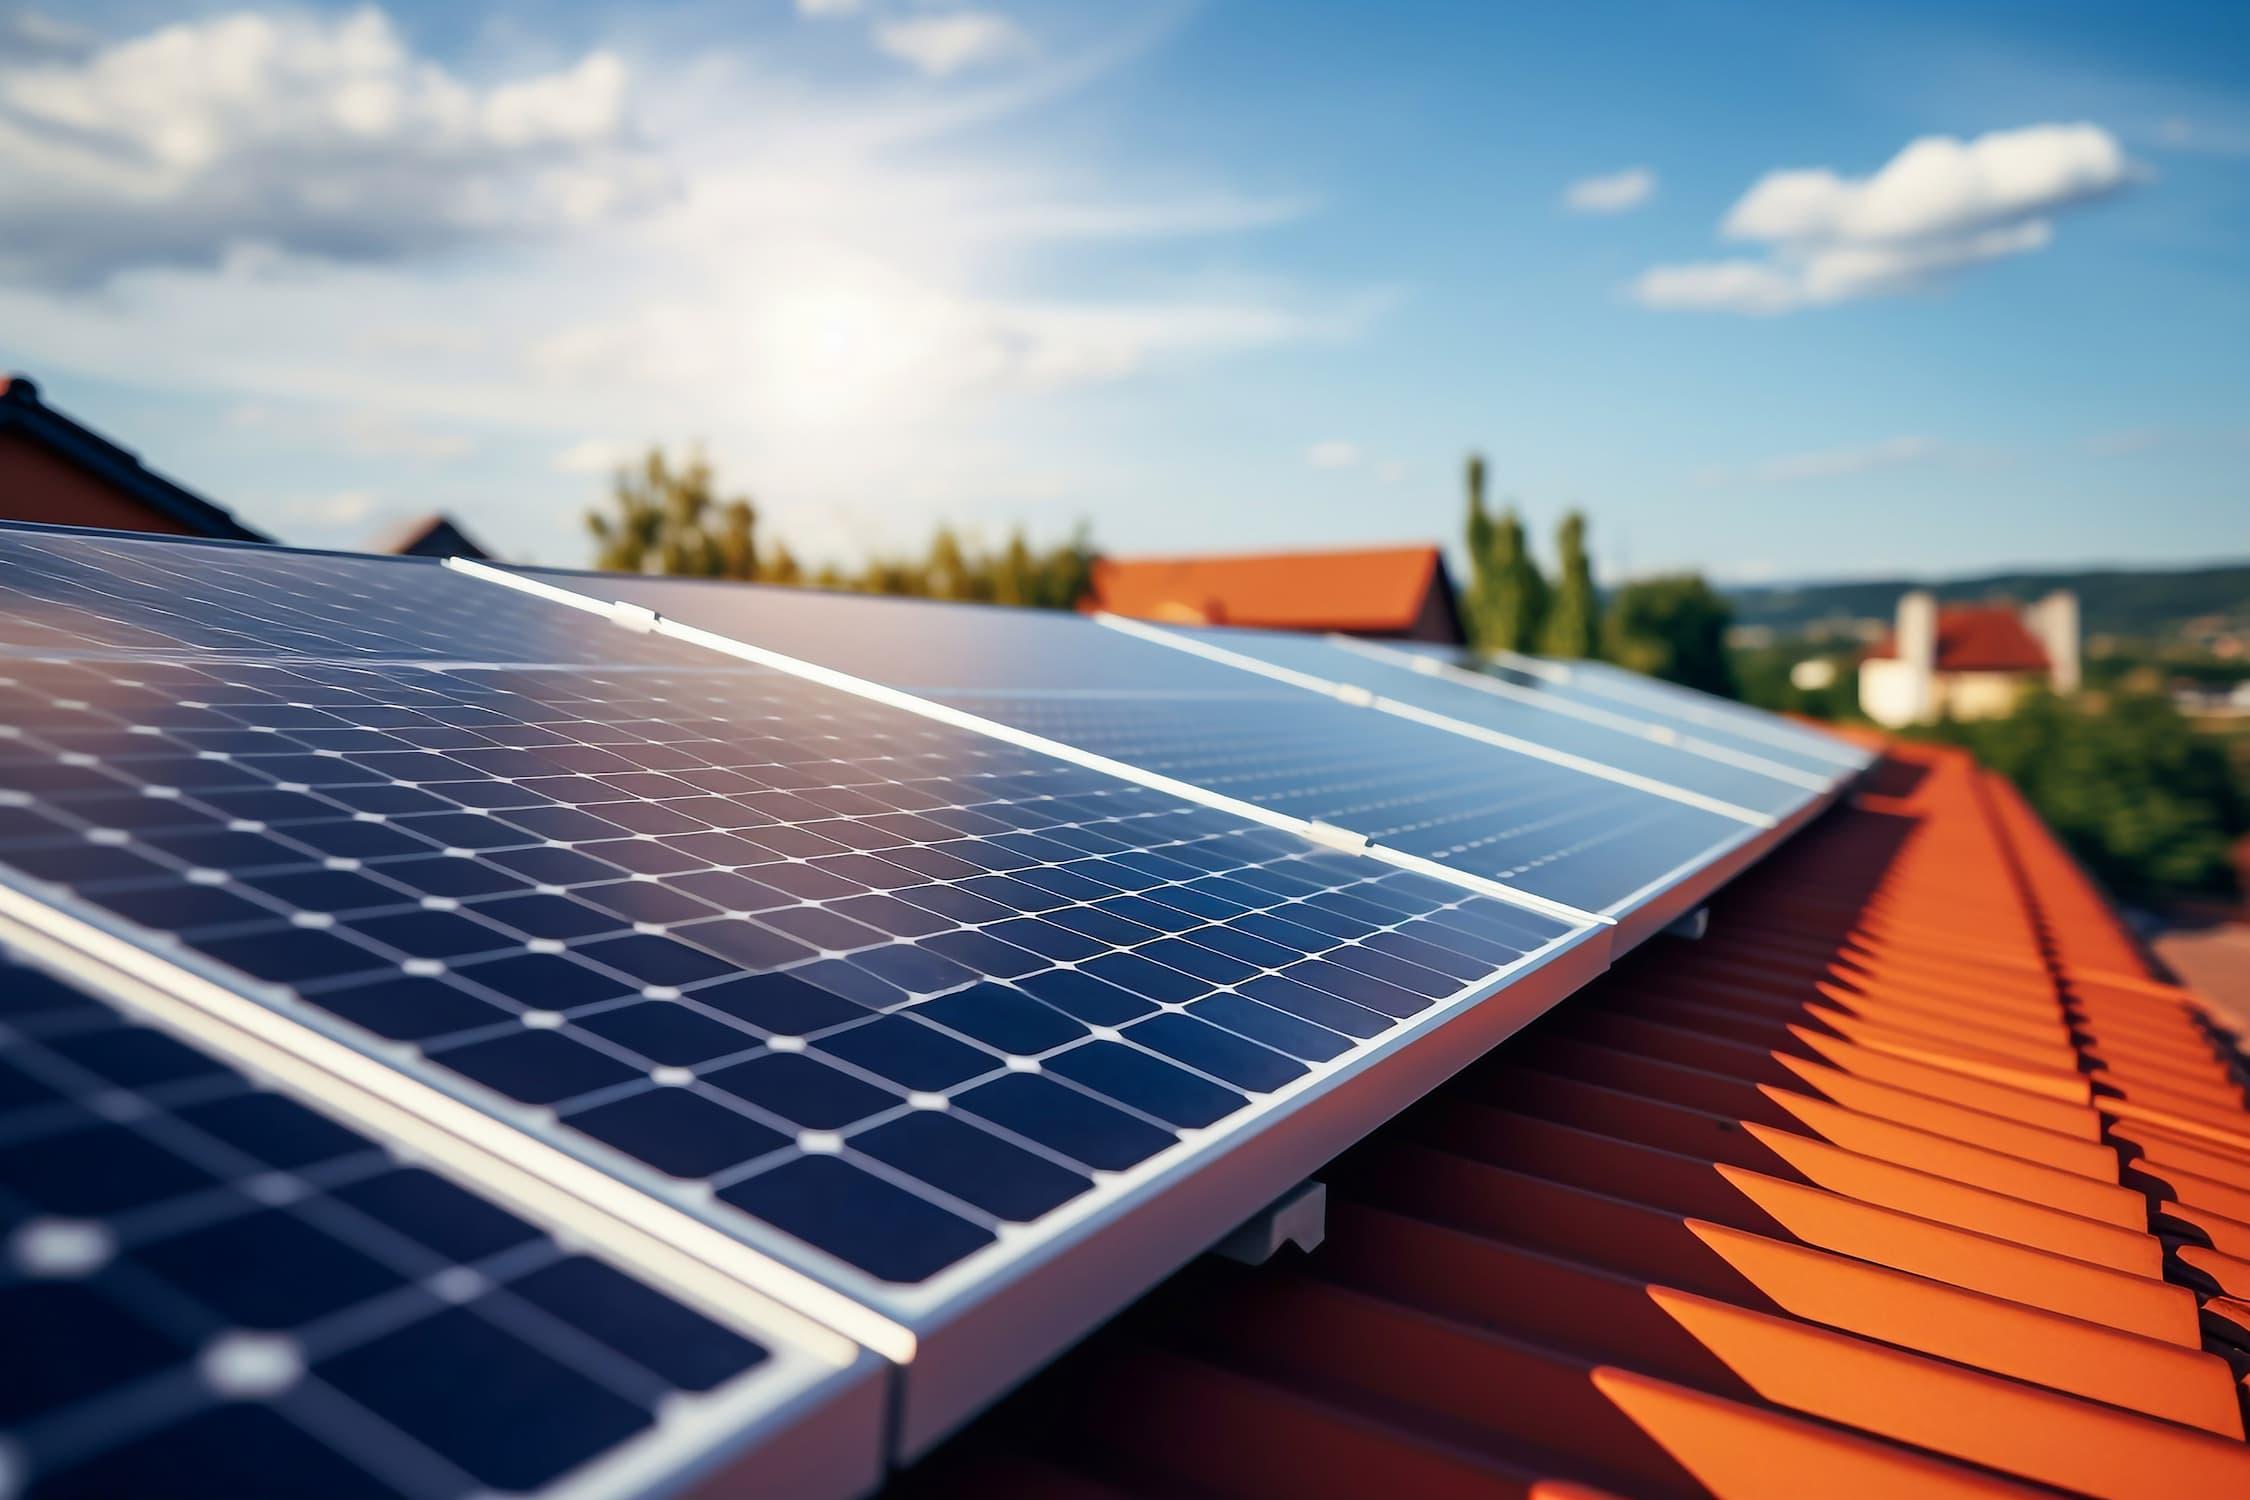 Sebrae Minas - Energia solar: 7 dicas para melhorar o pós-venda